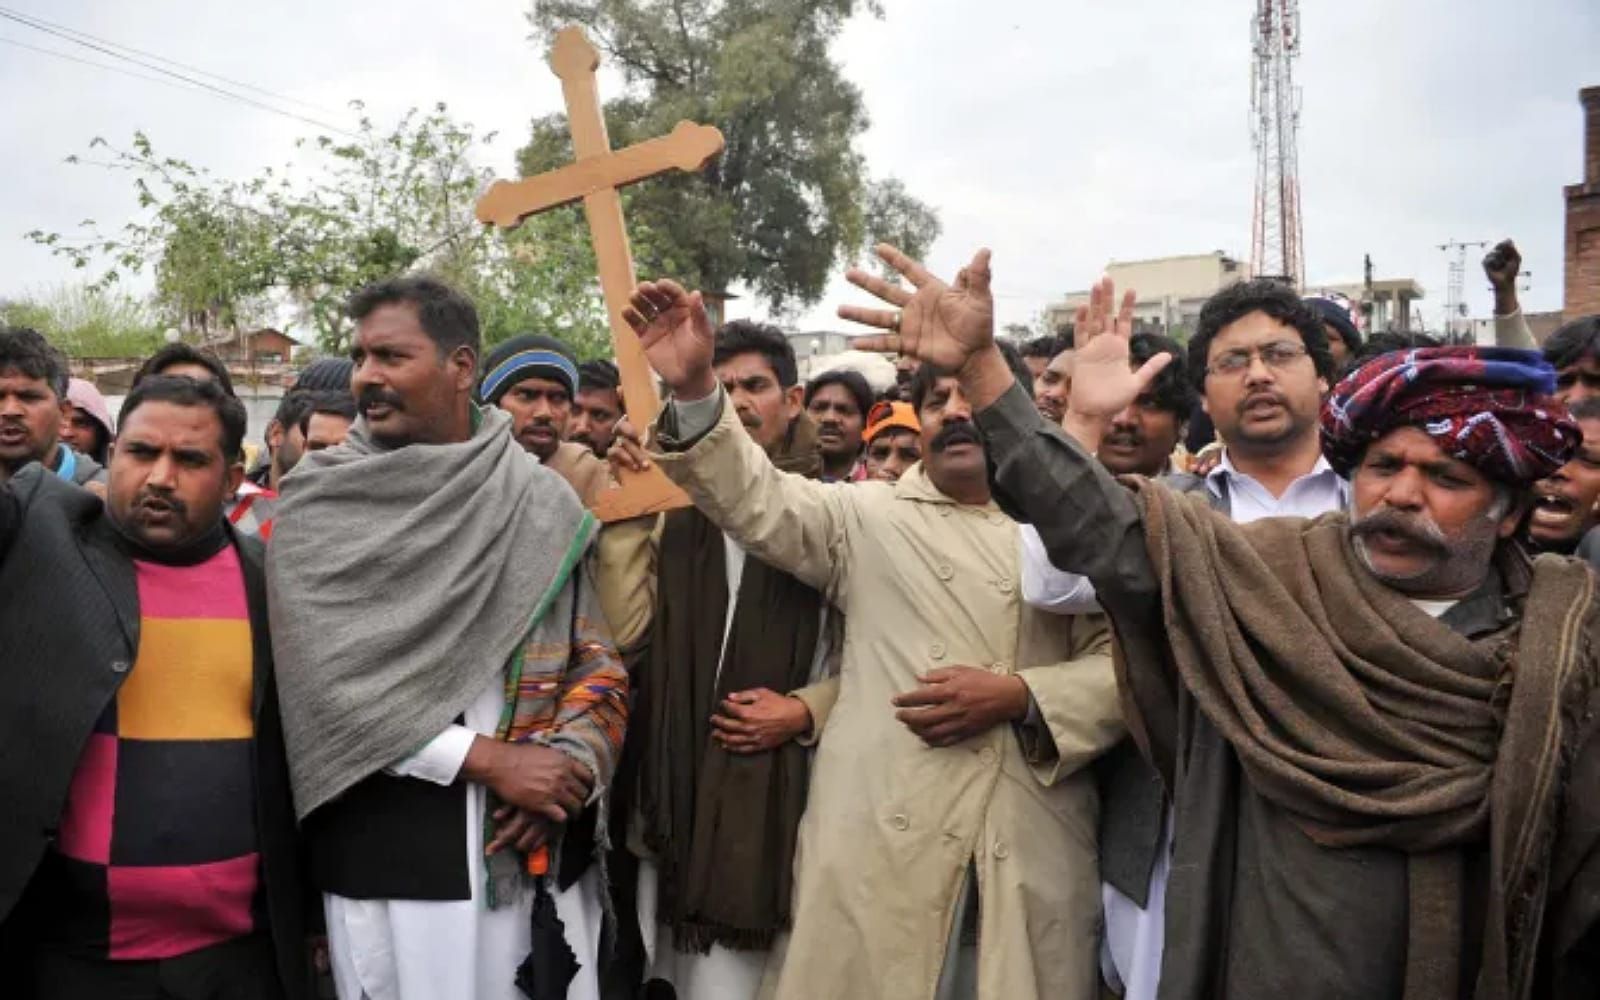 Católicos reagem a ataques de multidões contra cristãos no Paquistão